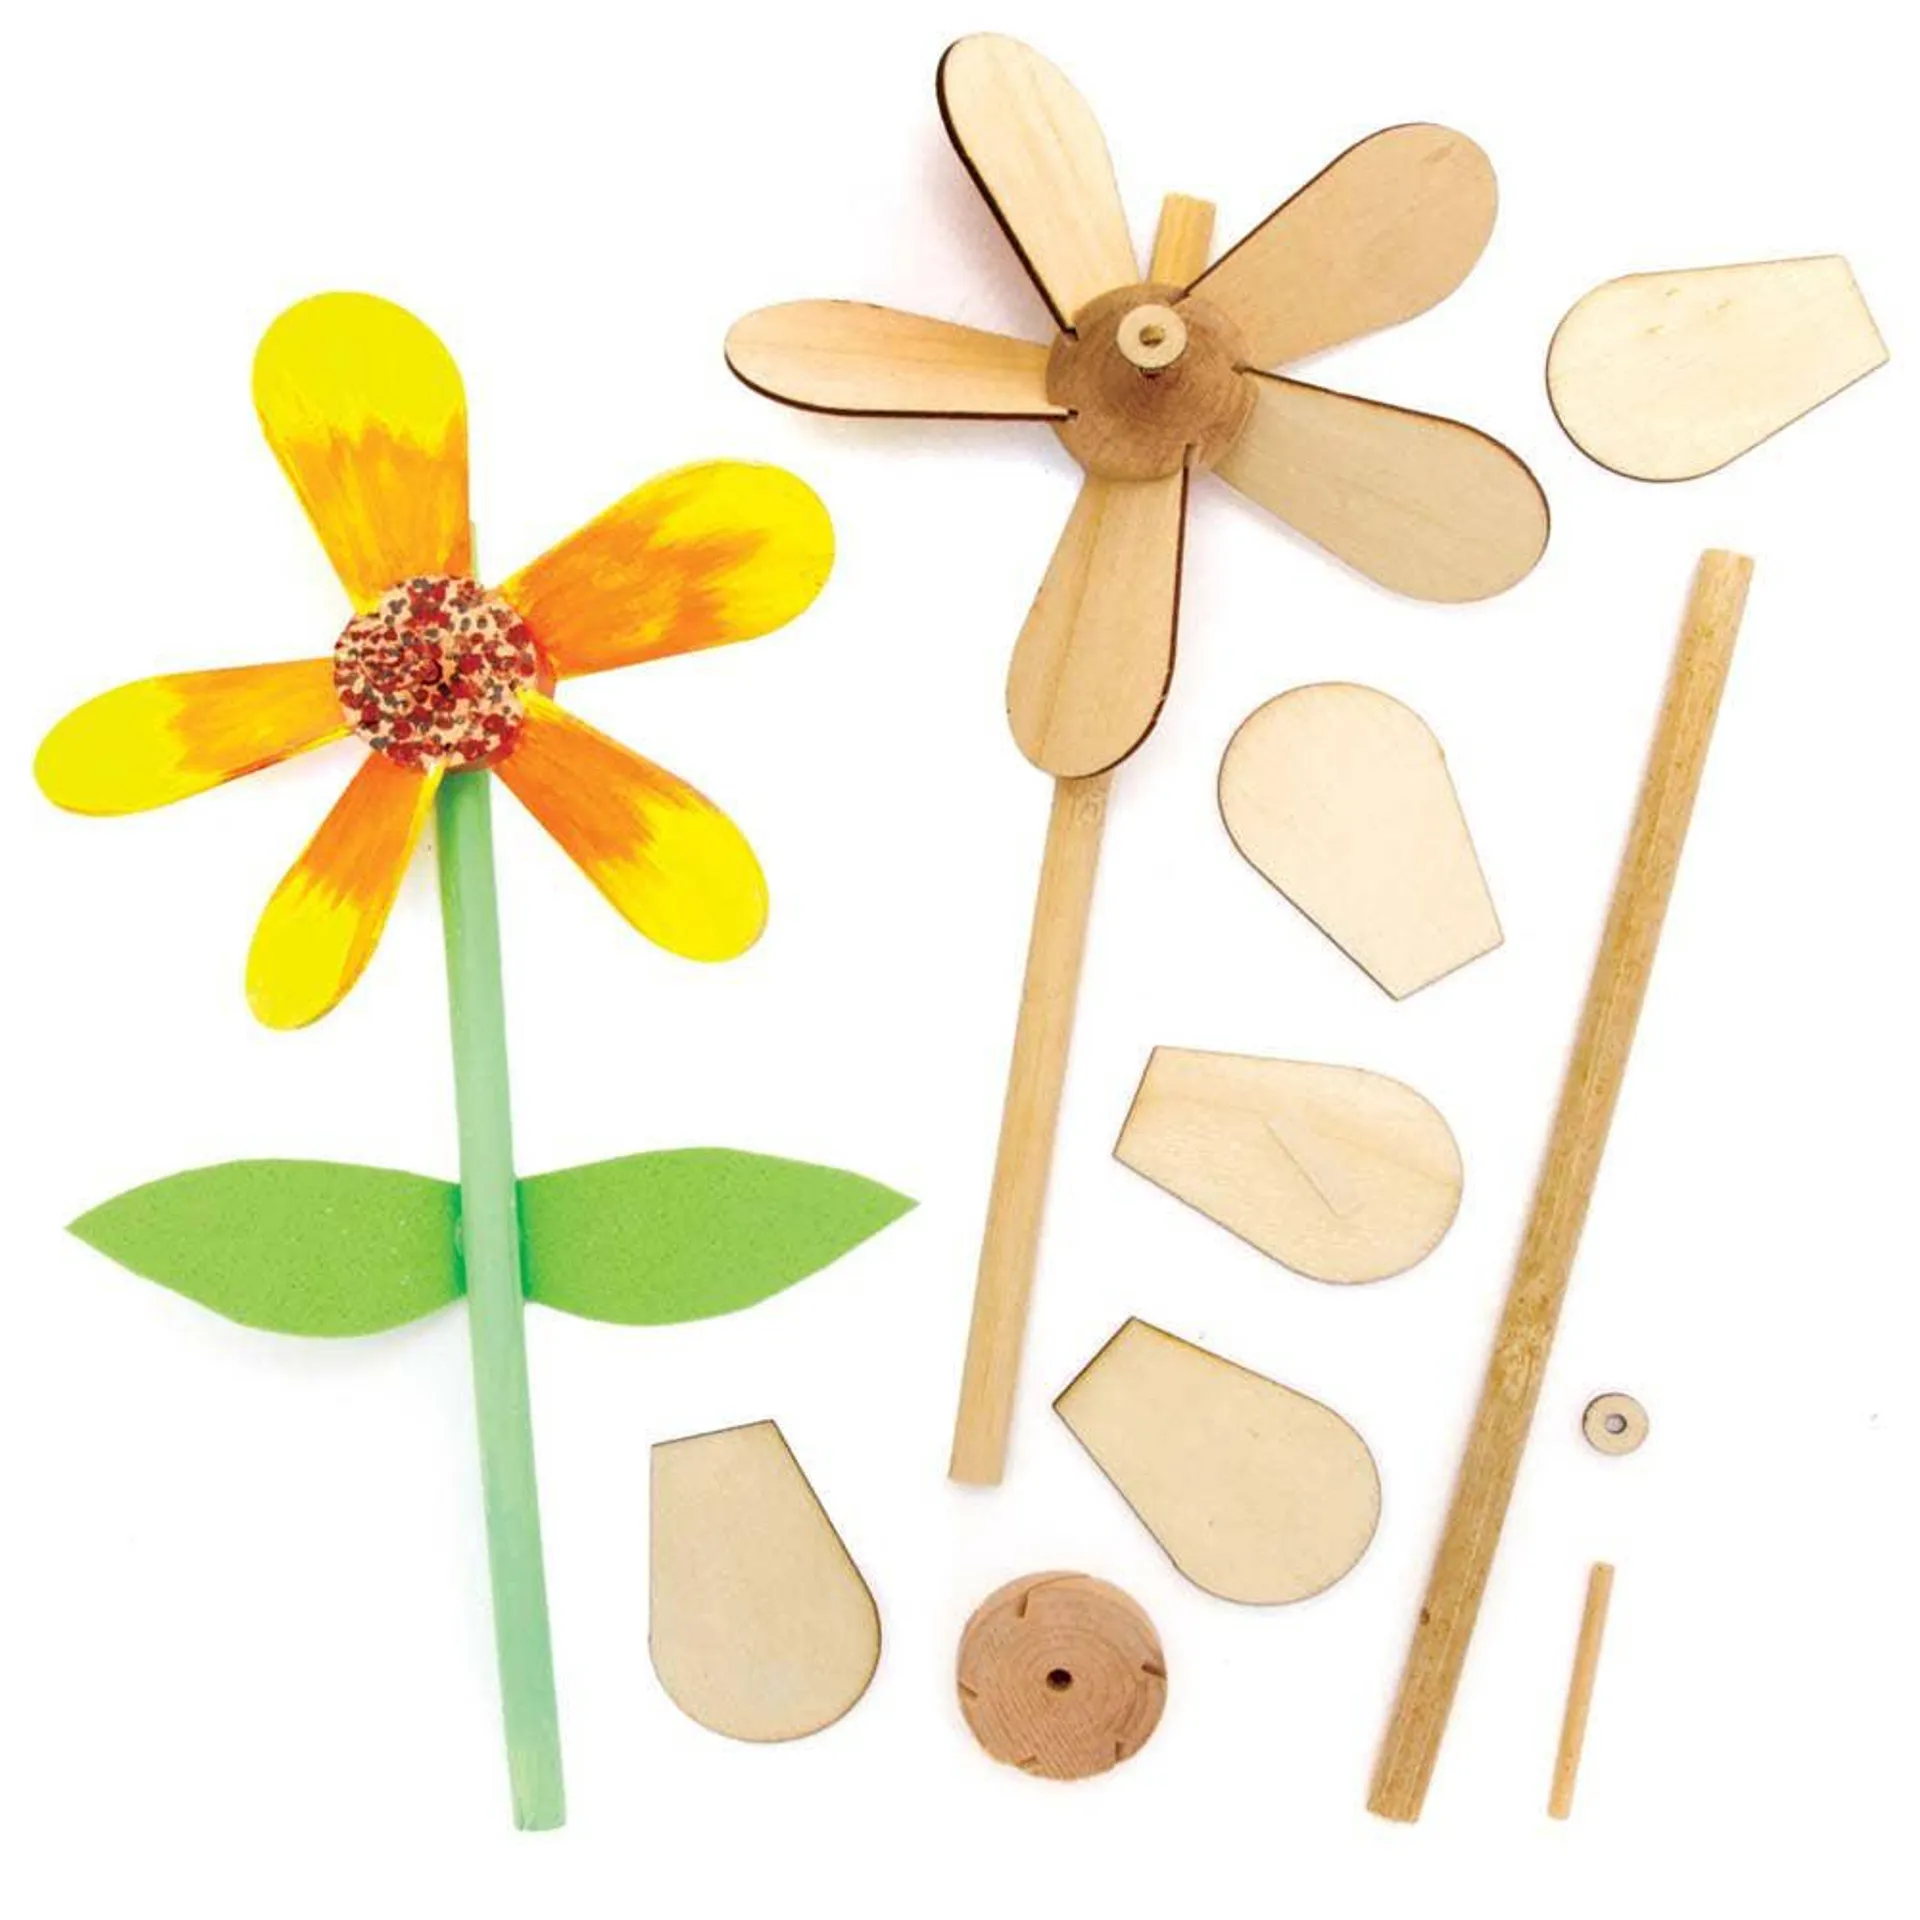 Flower Wooden Windmill Kits